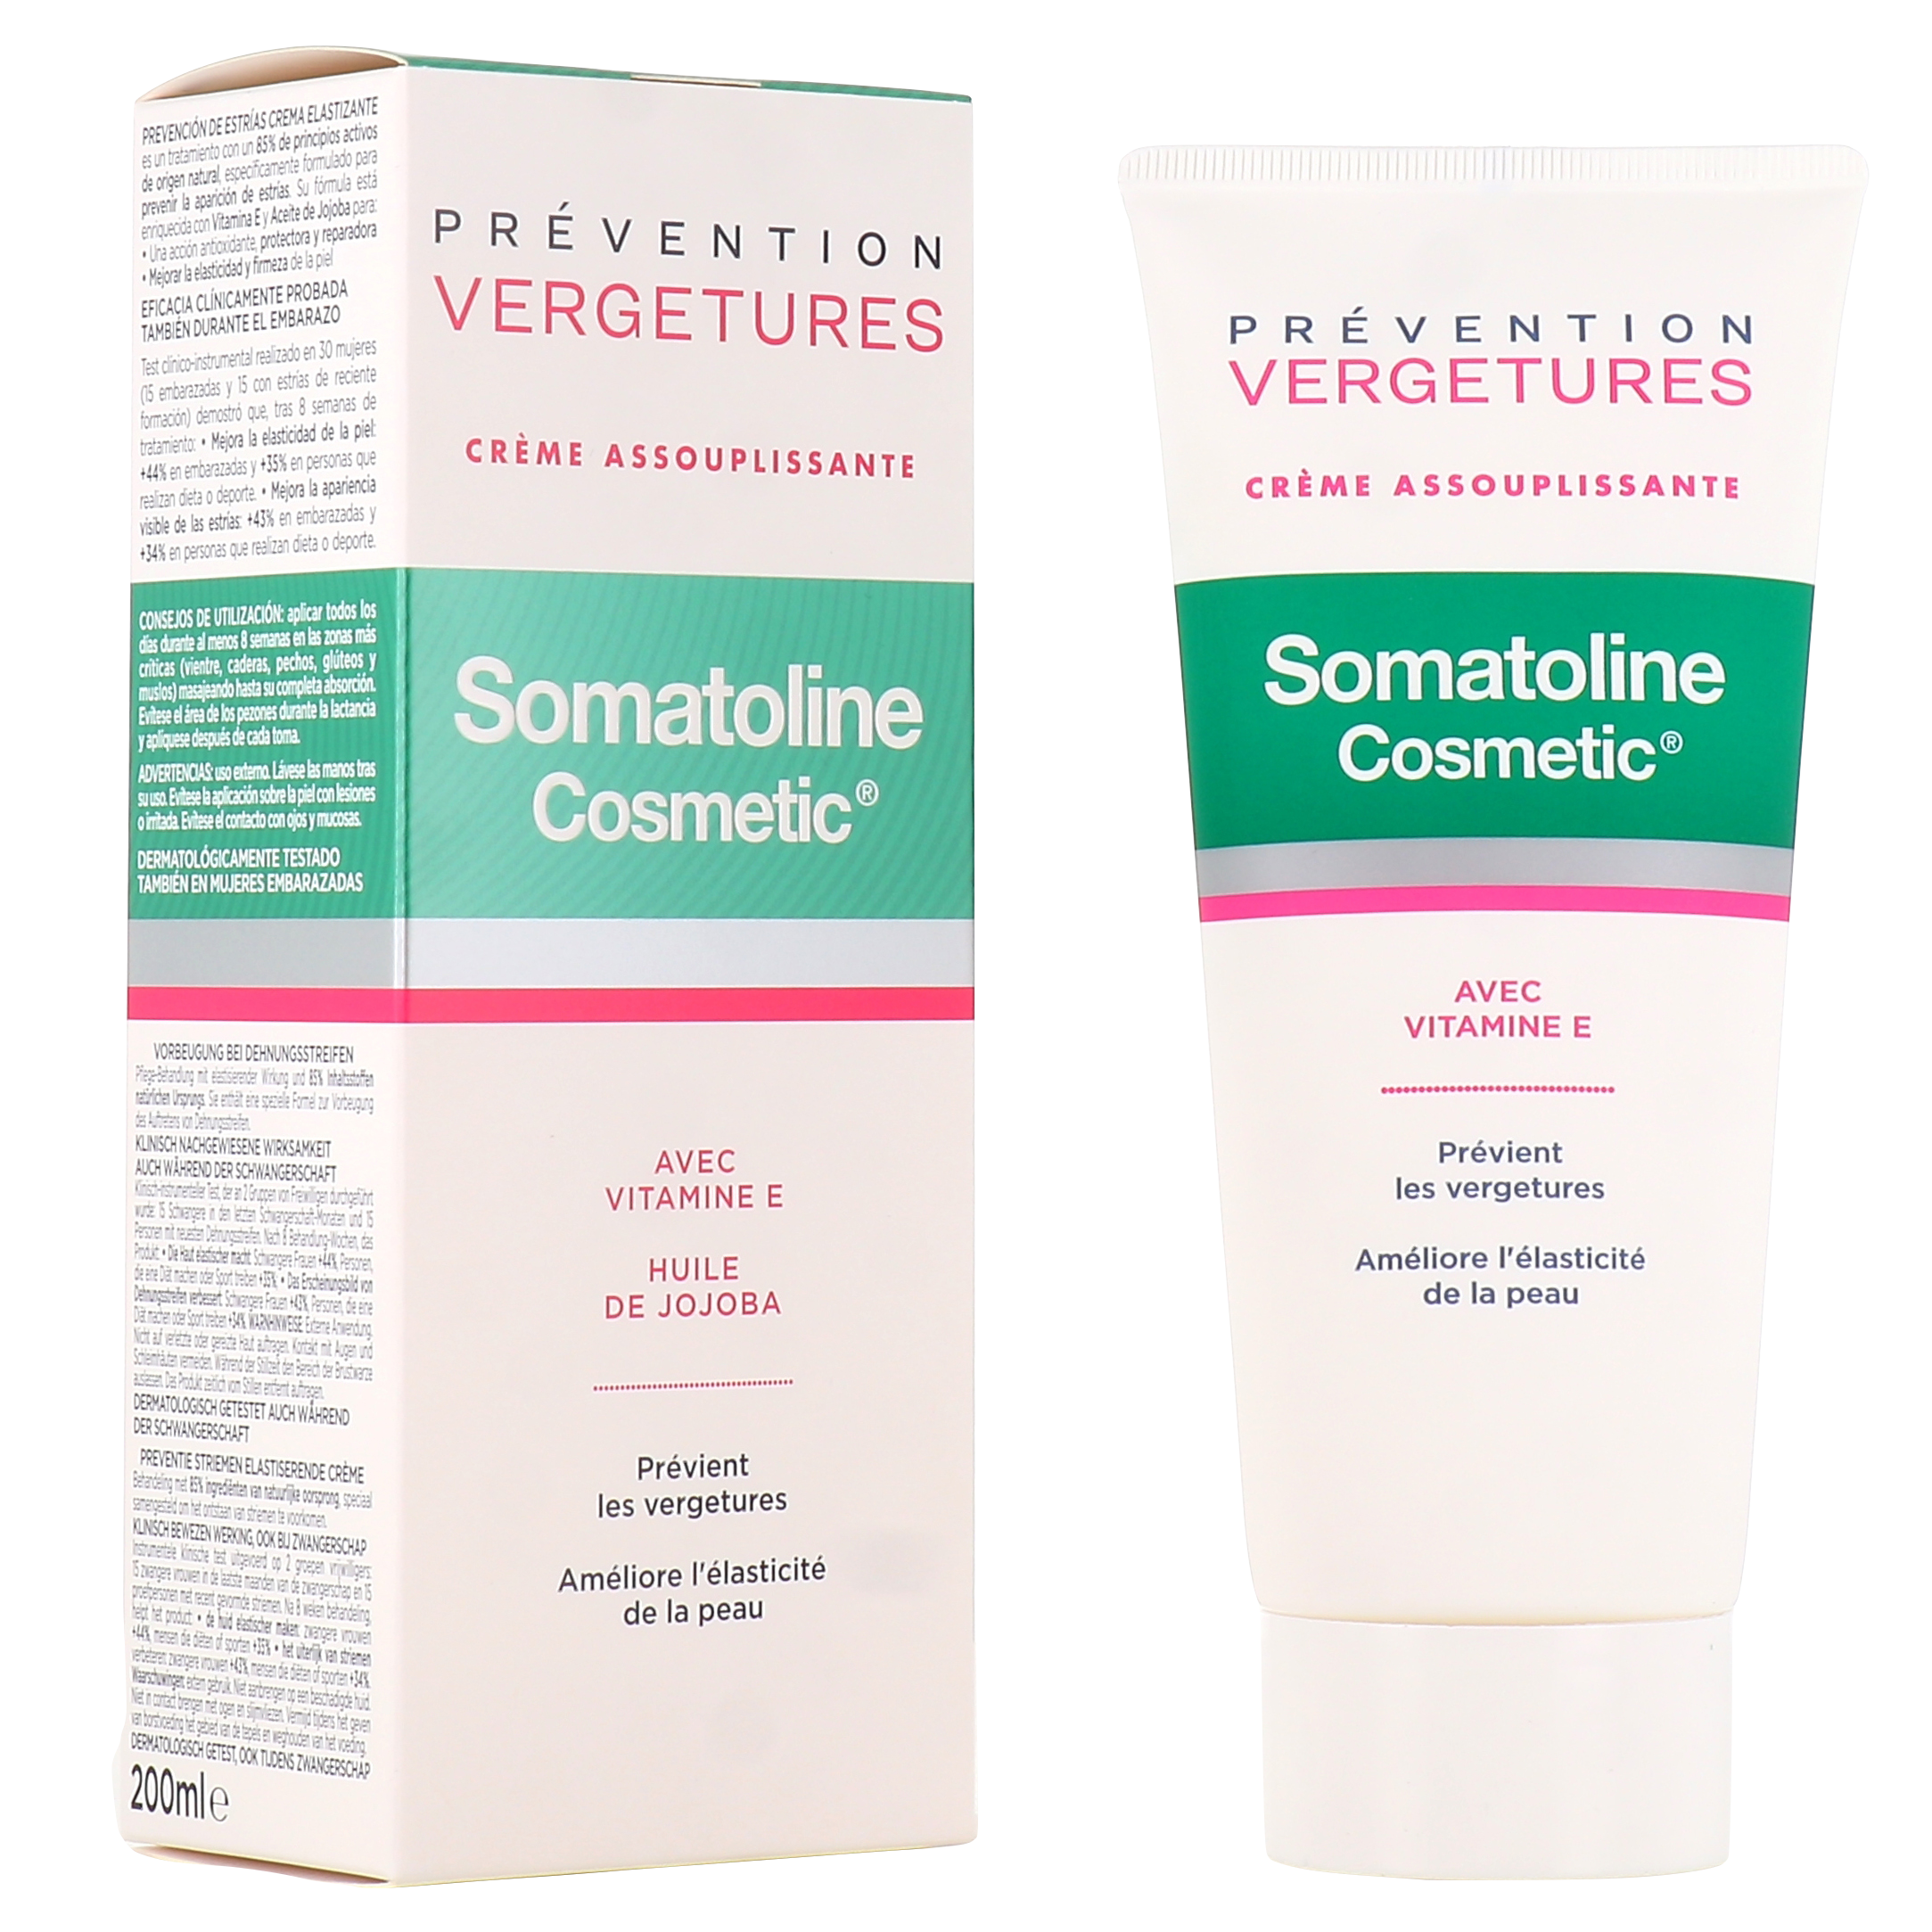 Crème assouplissante prévention vergetures Somatoline Cosmetic